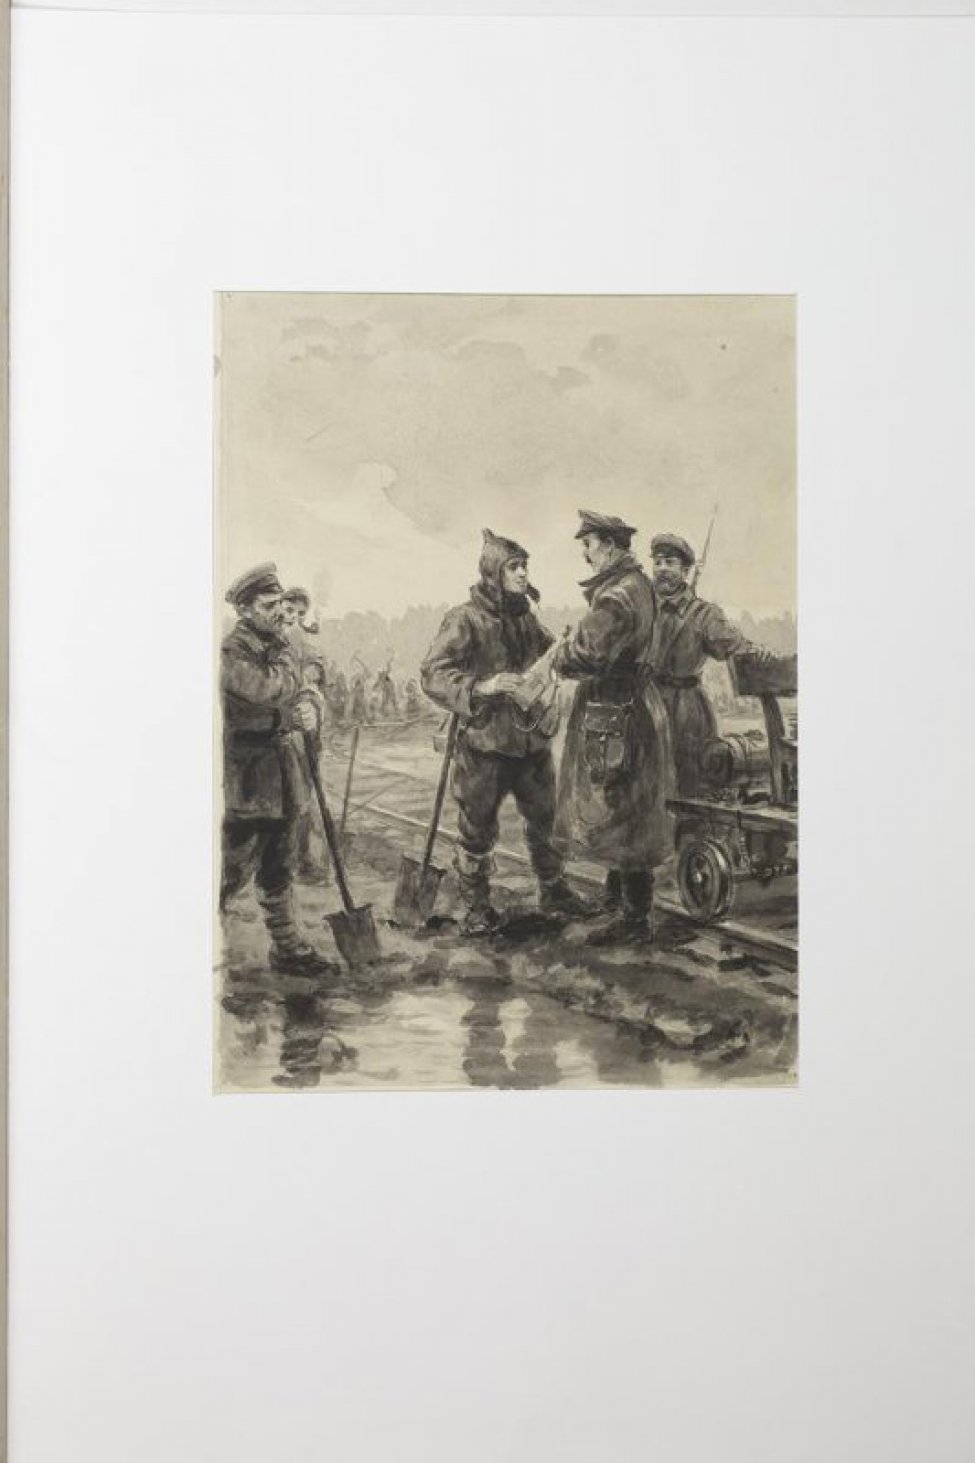 На первом плане справа изображены железнодорожные пути и трое мужчин, двое из которых в шинелях, а один в буденновке и с лопатой в руке; слева - фрагмент изображения мужчины с лопатой. На дальнем плане - группа людей с кирками, работающих на путях.